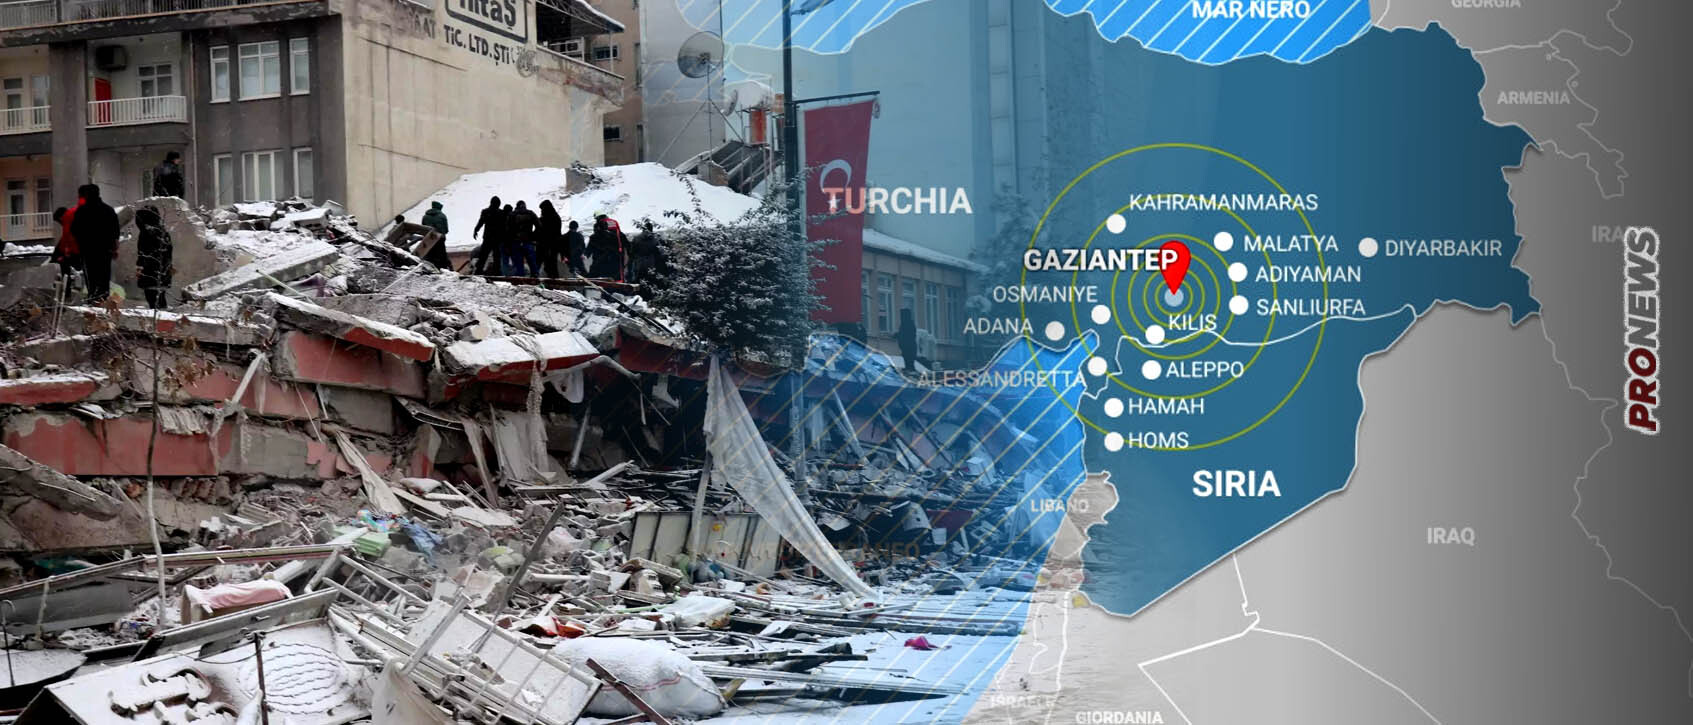 Ολόκληρη η Τουρκία μετακινήθηκε τρία μέτρα από τους σεισμούς σήμερα! – Απίστευτο γεωλογικό συμβάν! (upd)